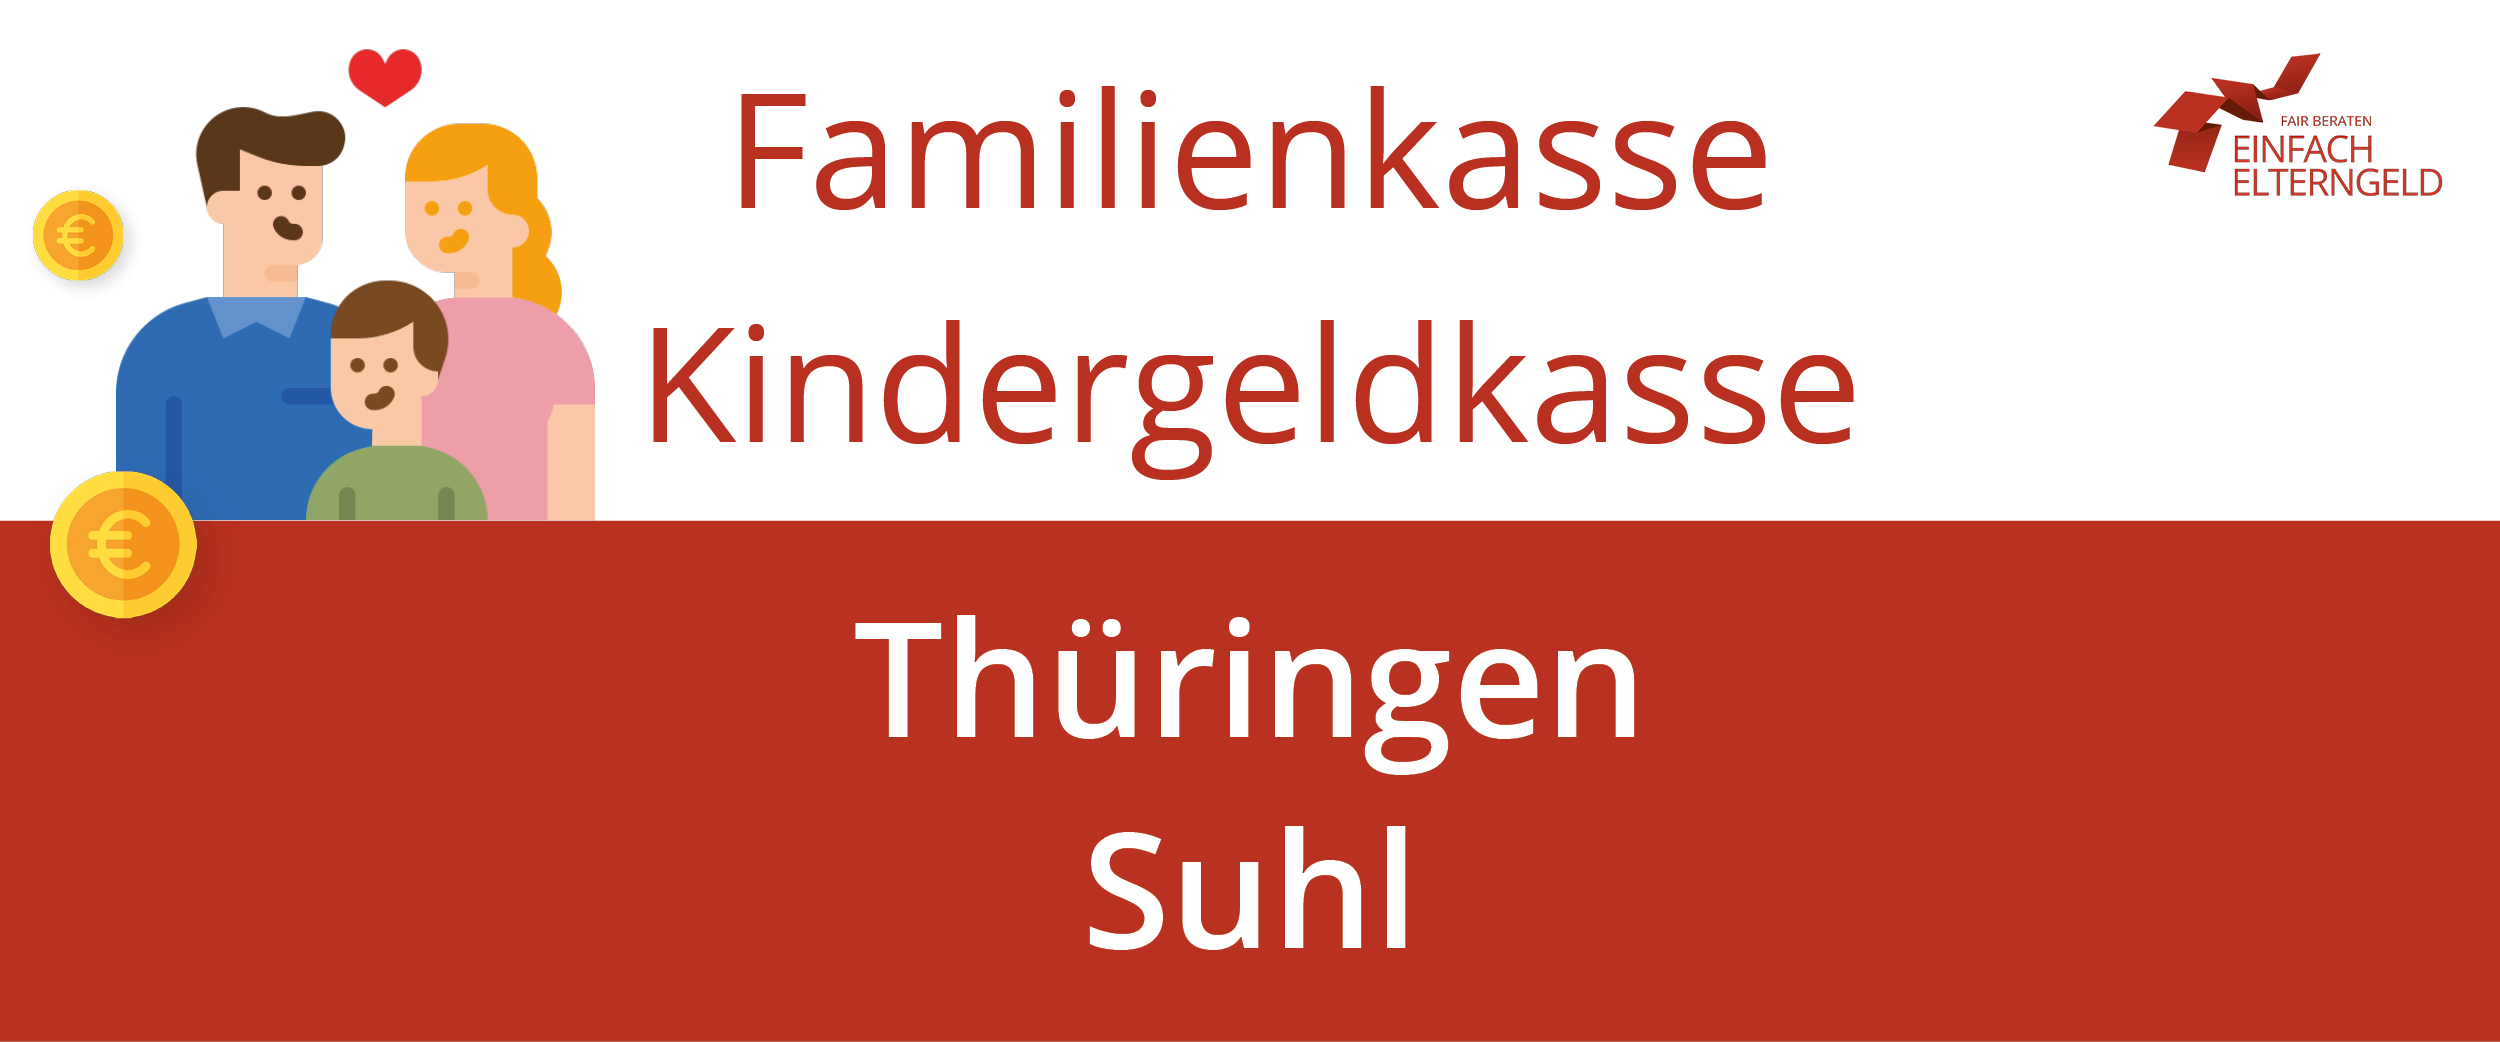 Familienkasse Kindergeldkasse Thüringen Suhl - So erreichen Sie Ihre Familienkasse.